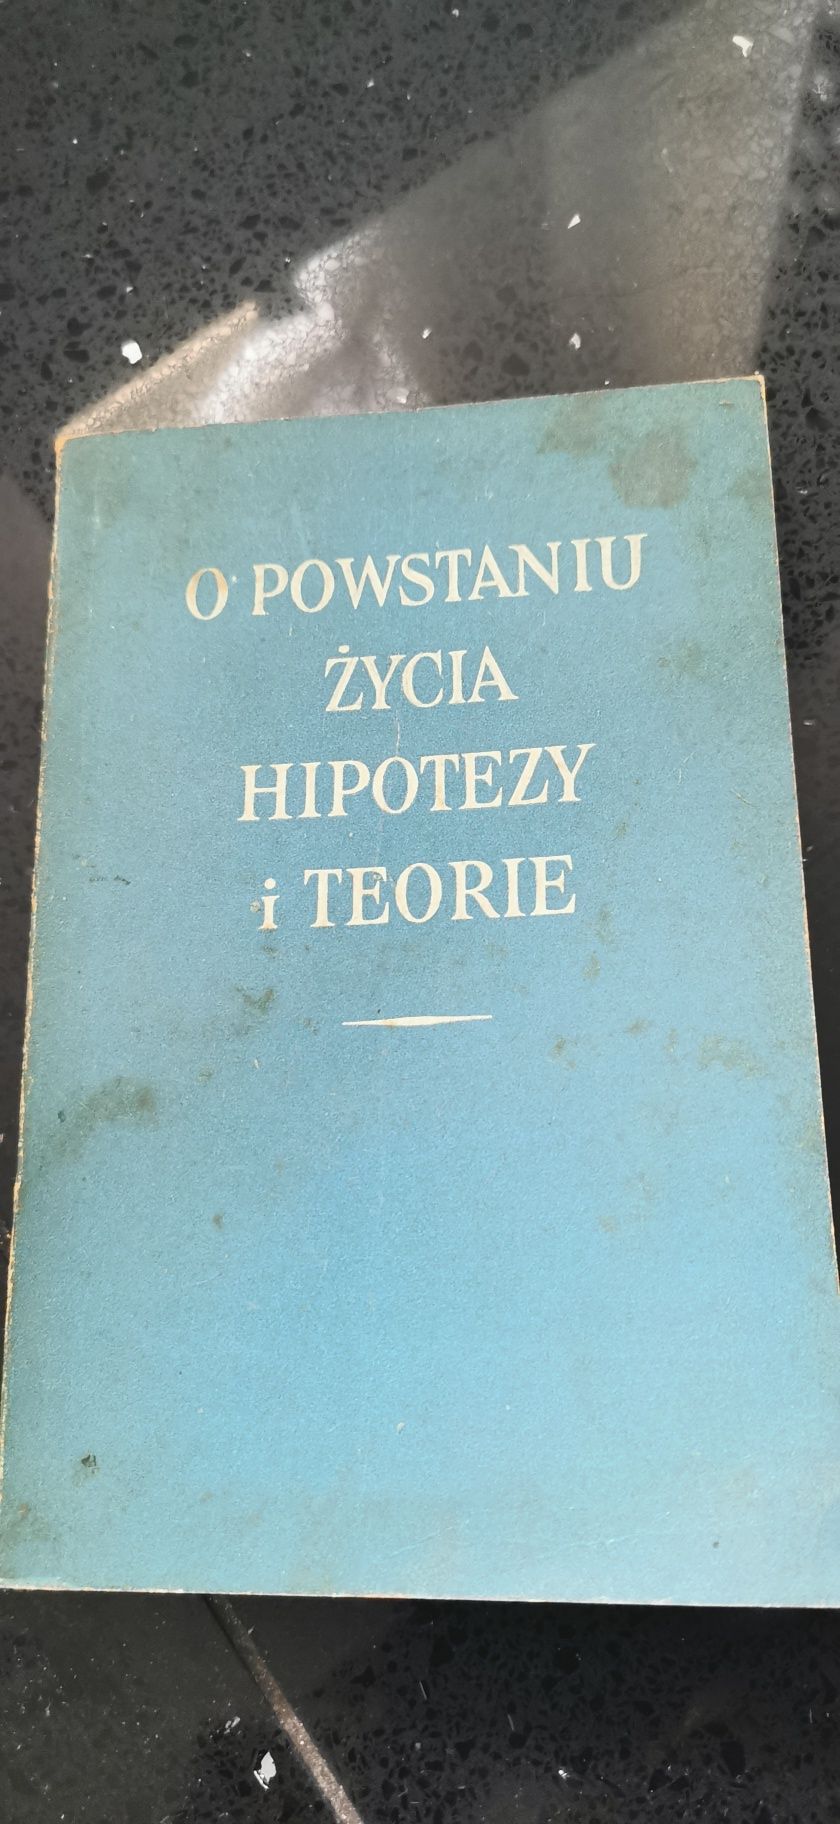 O powstaniu życia hipotezy i teorie 1957
Maria Jordan, Stanisław Teofi